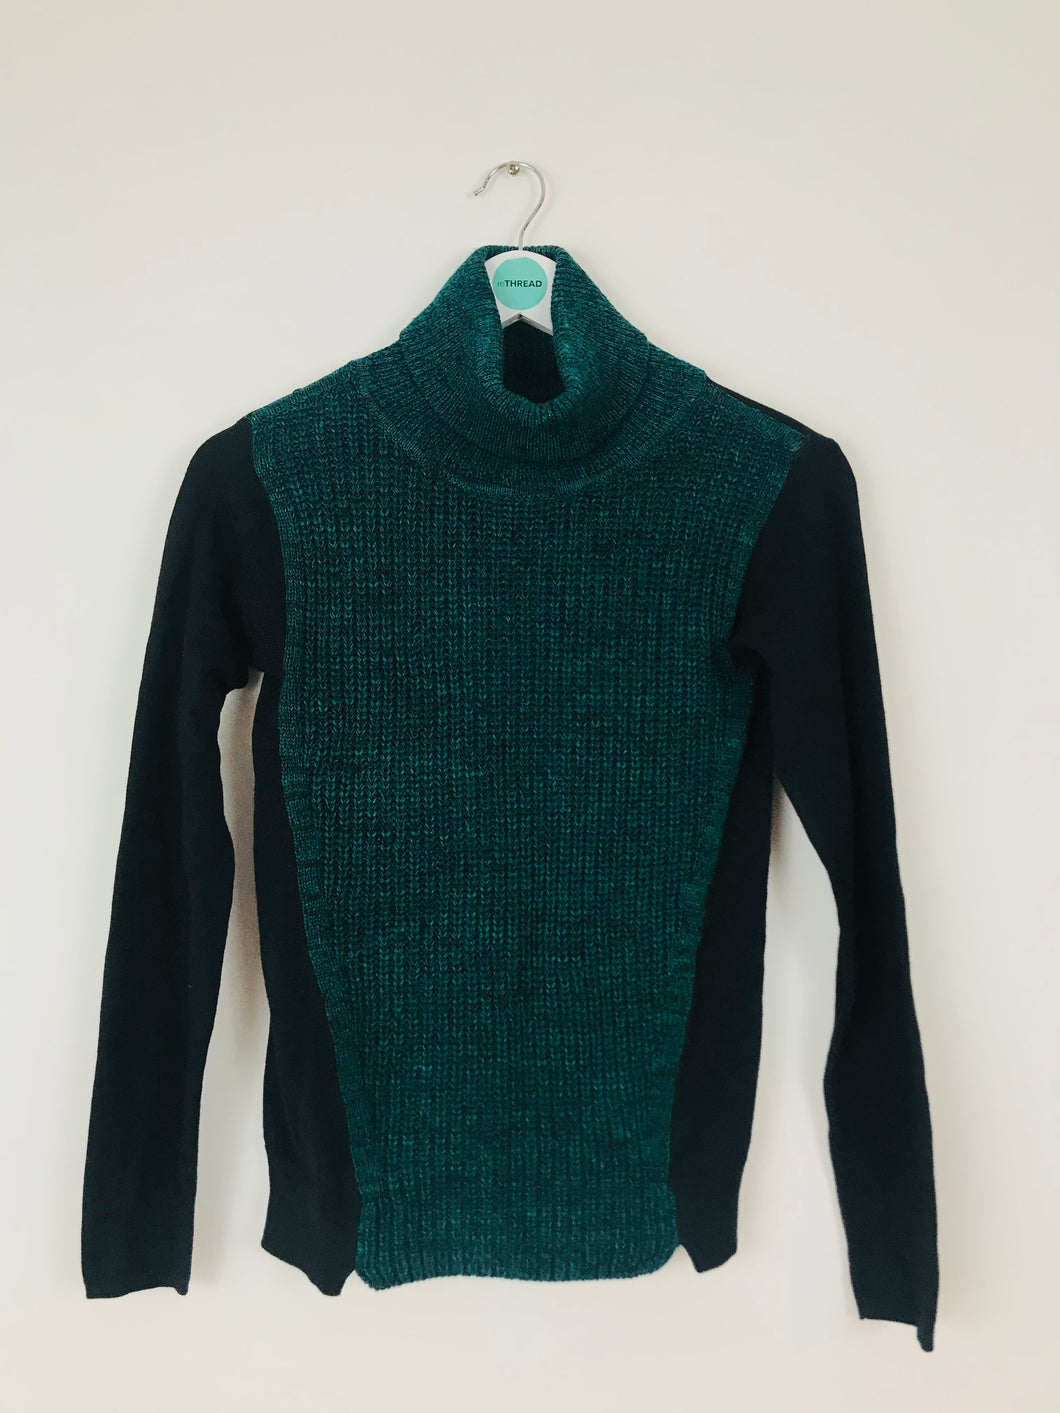 Karen Millen Womens Contrast Roll-Neck Knit Jumper | Size 1 UK8 | Green Black